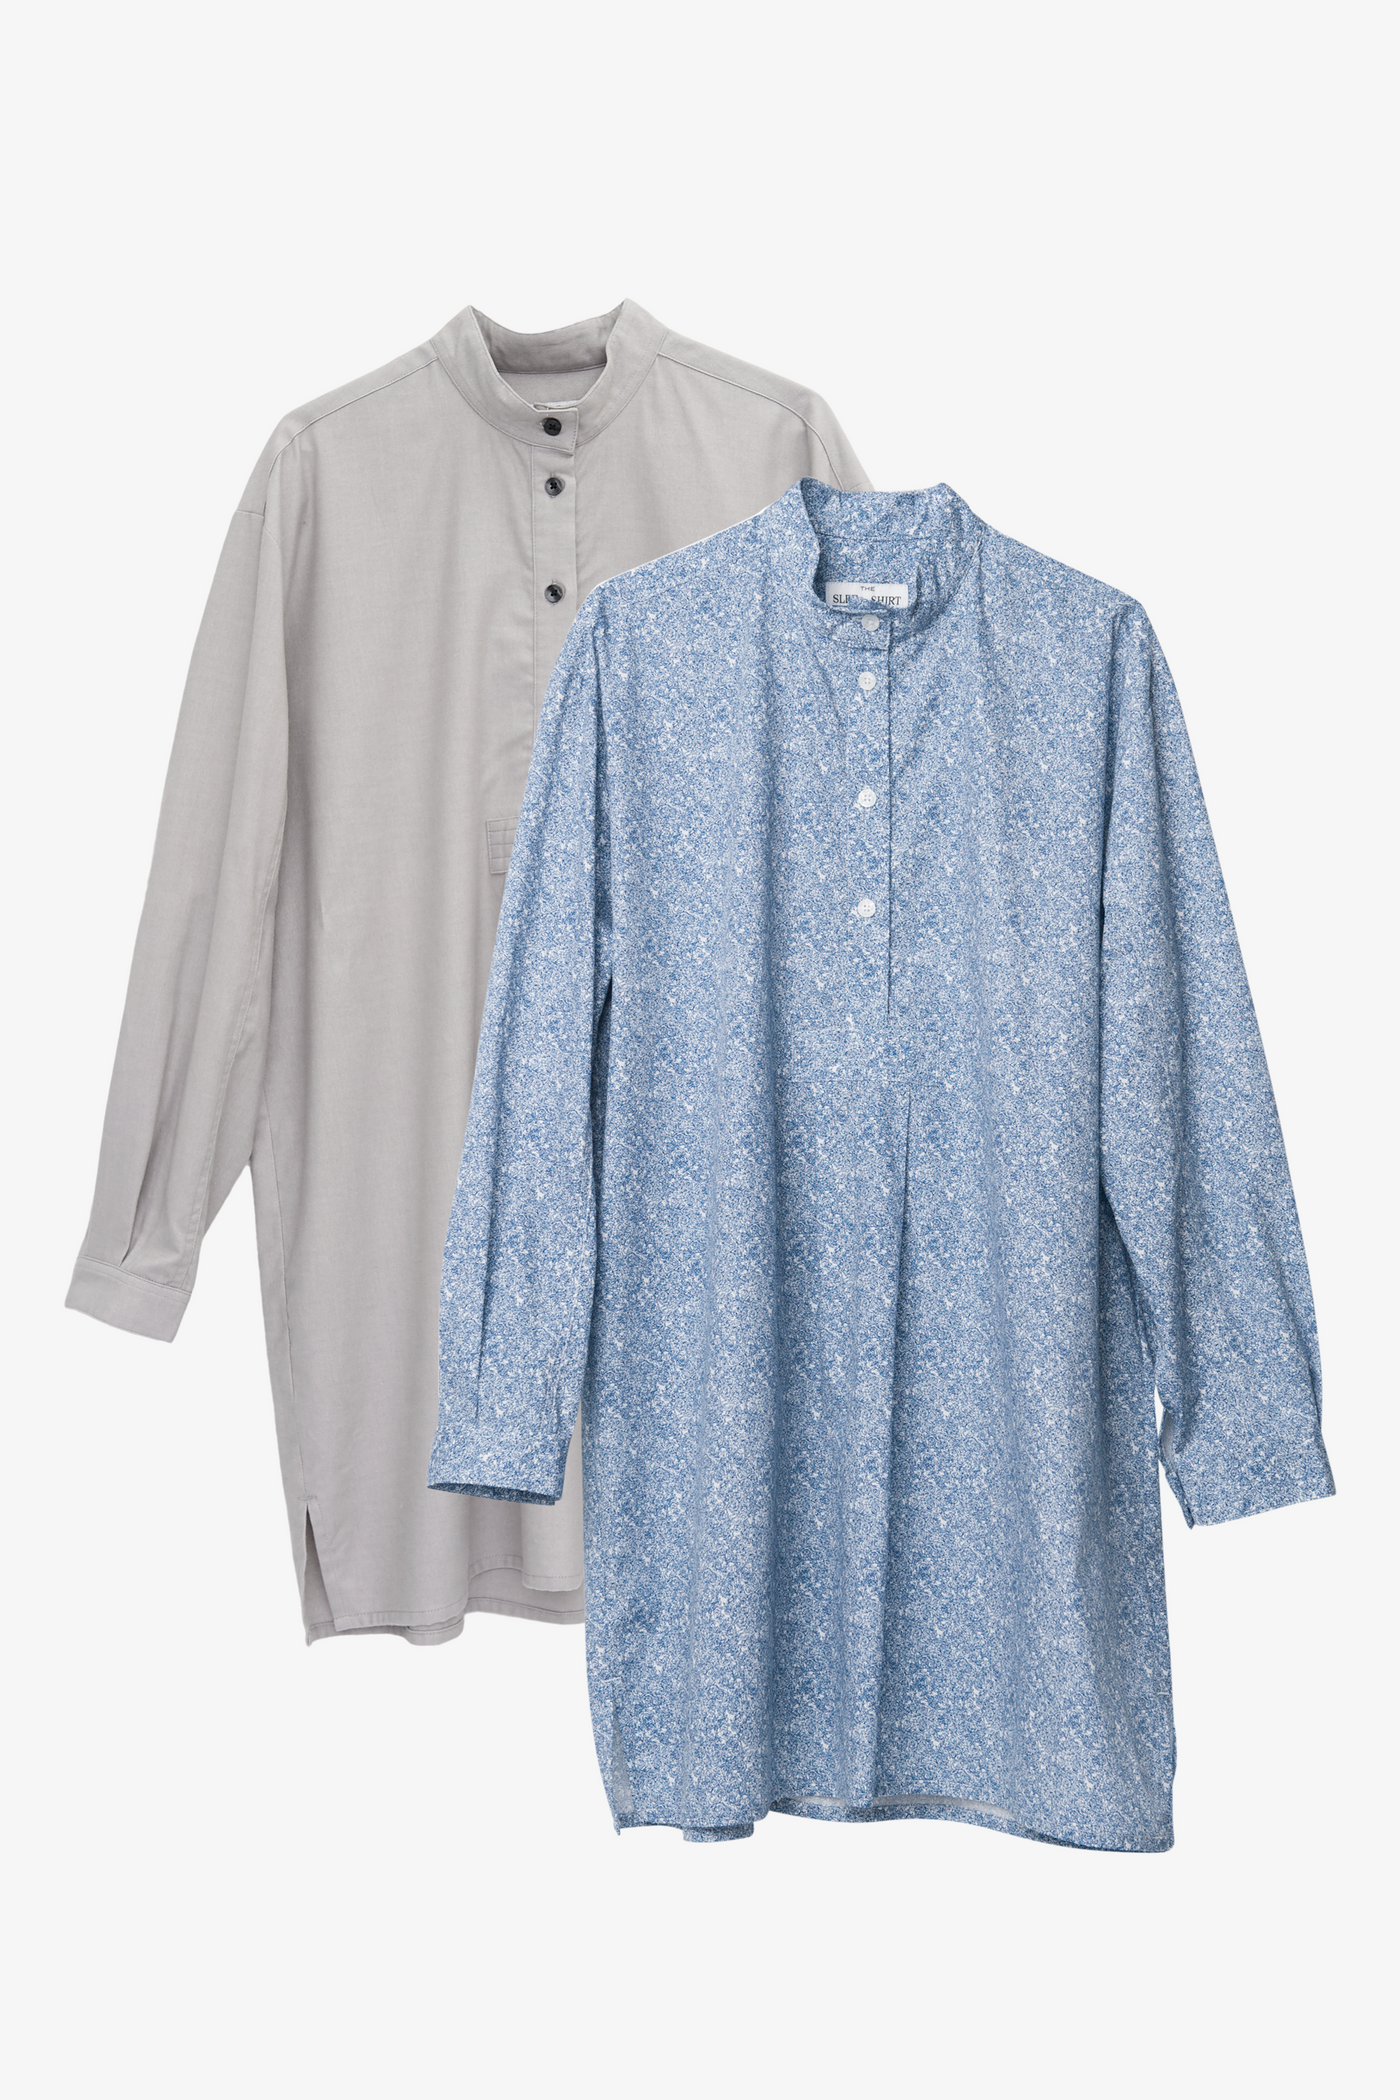 2 Short Sleep Shirts, 100% Cotton, One Size